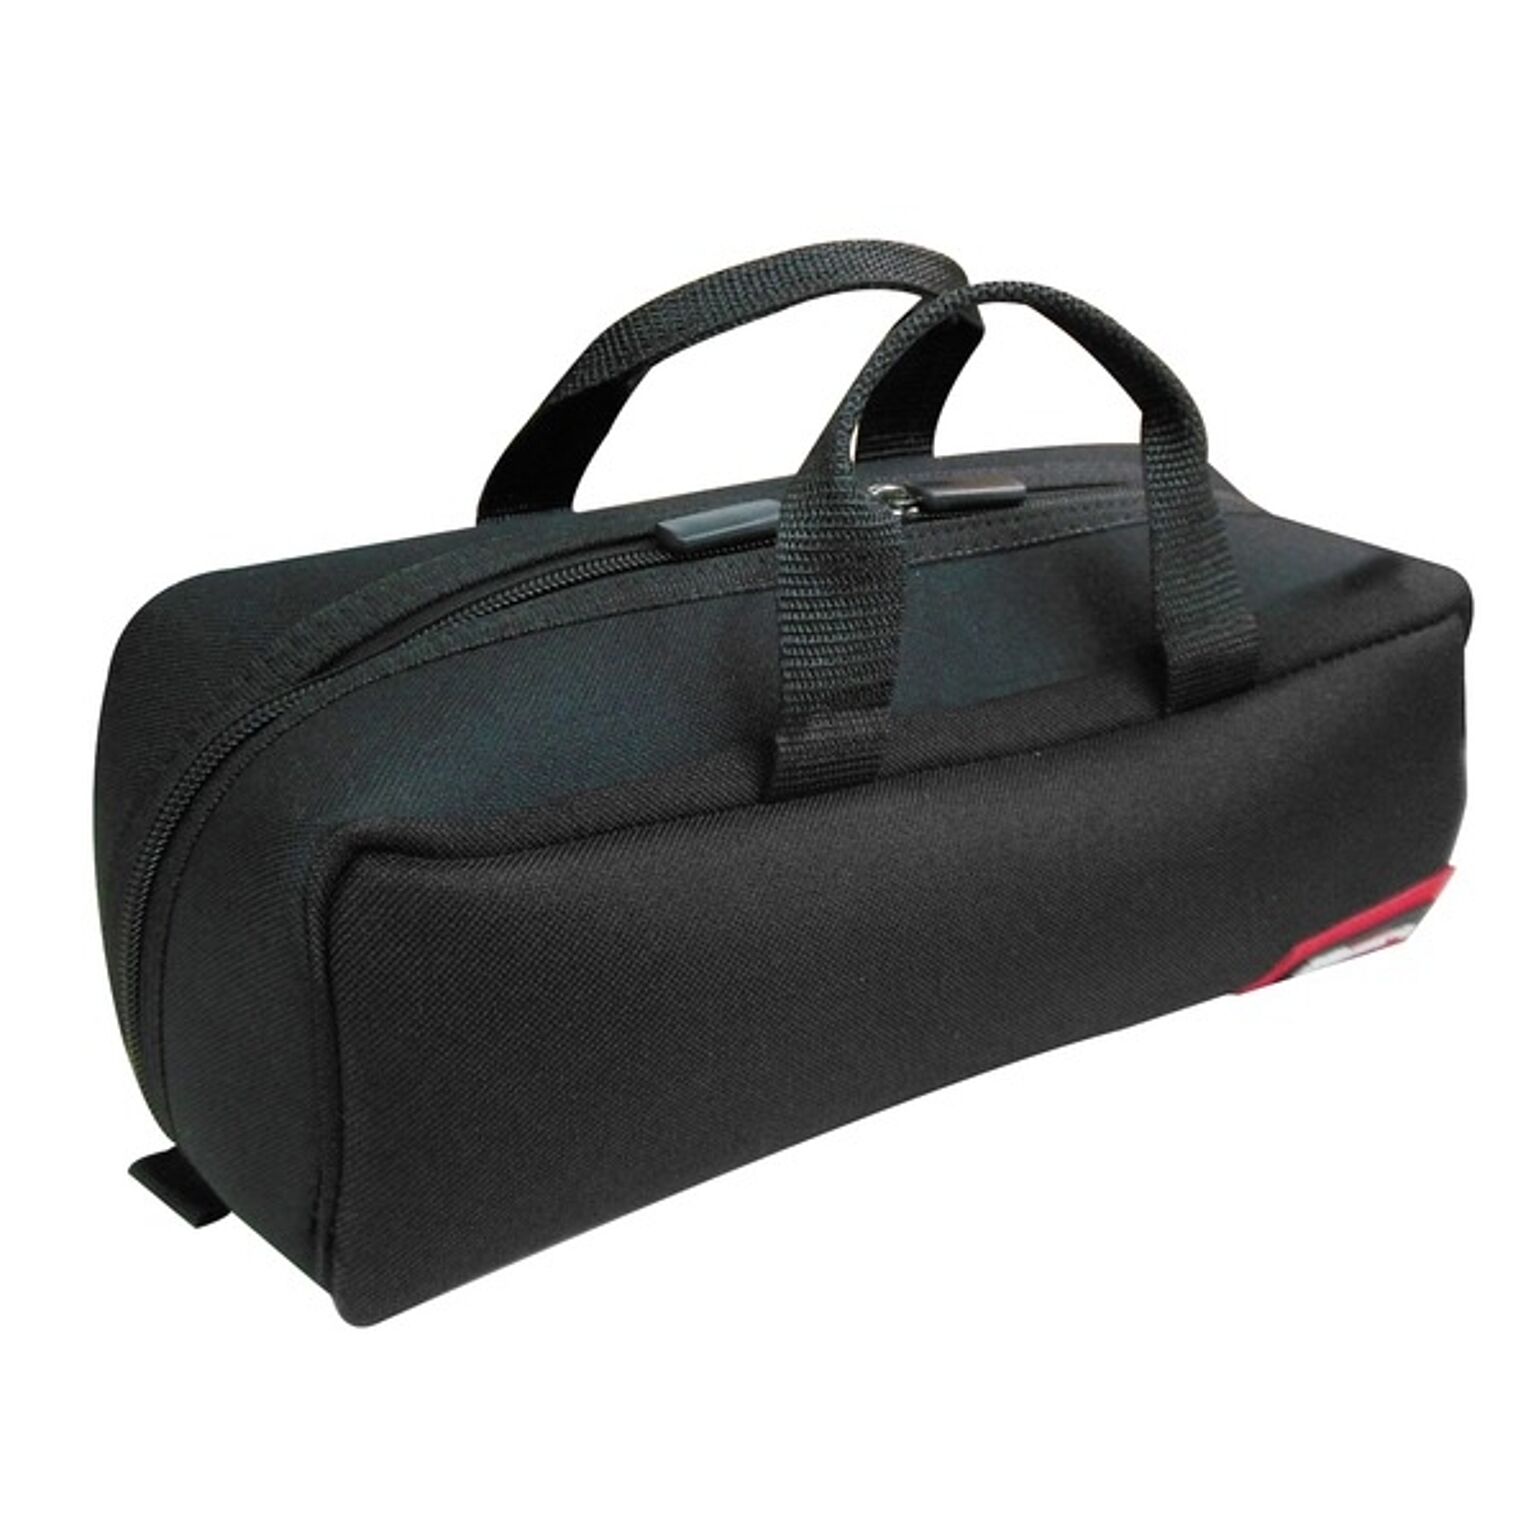 （業務用20個セット）DBLTACT トレジャーボックス（作業バッグ/手提げ鞄） Sサイズ 自立型/軽量 DTQ-S-BK ブラック（黒） 〔収納用具〕【×20セット】【送料無料】